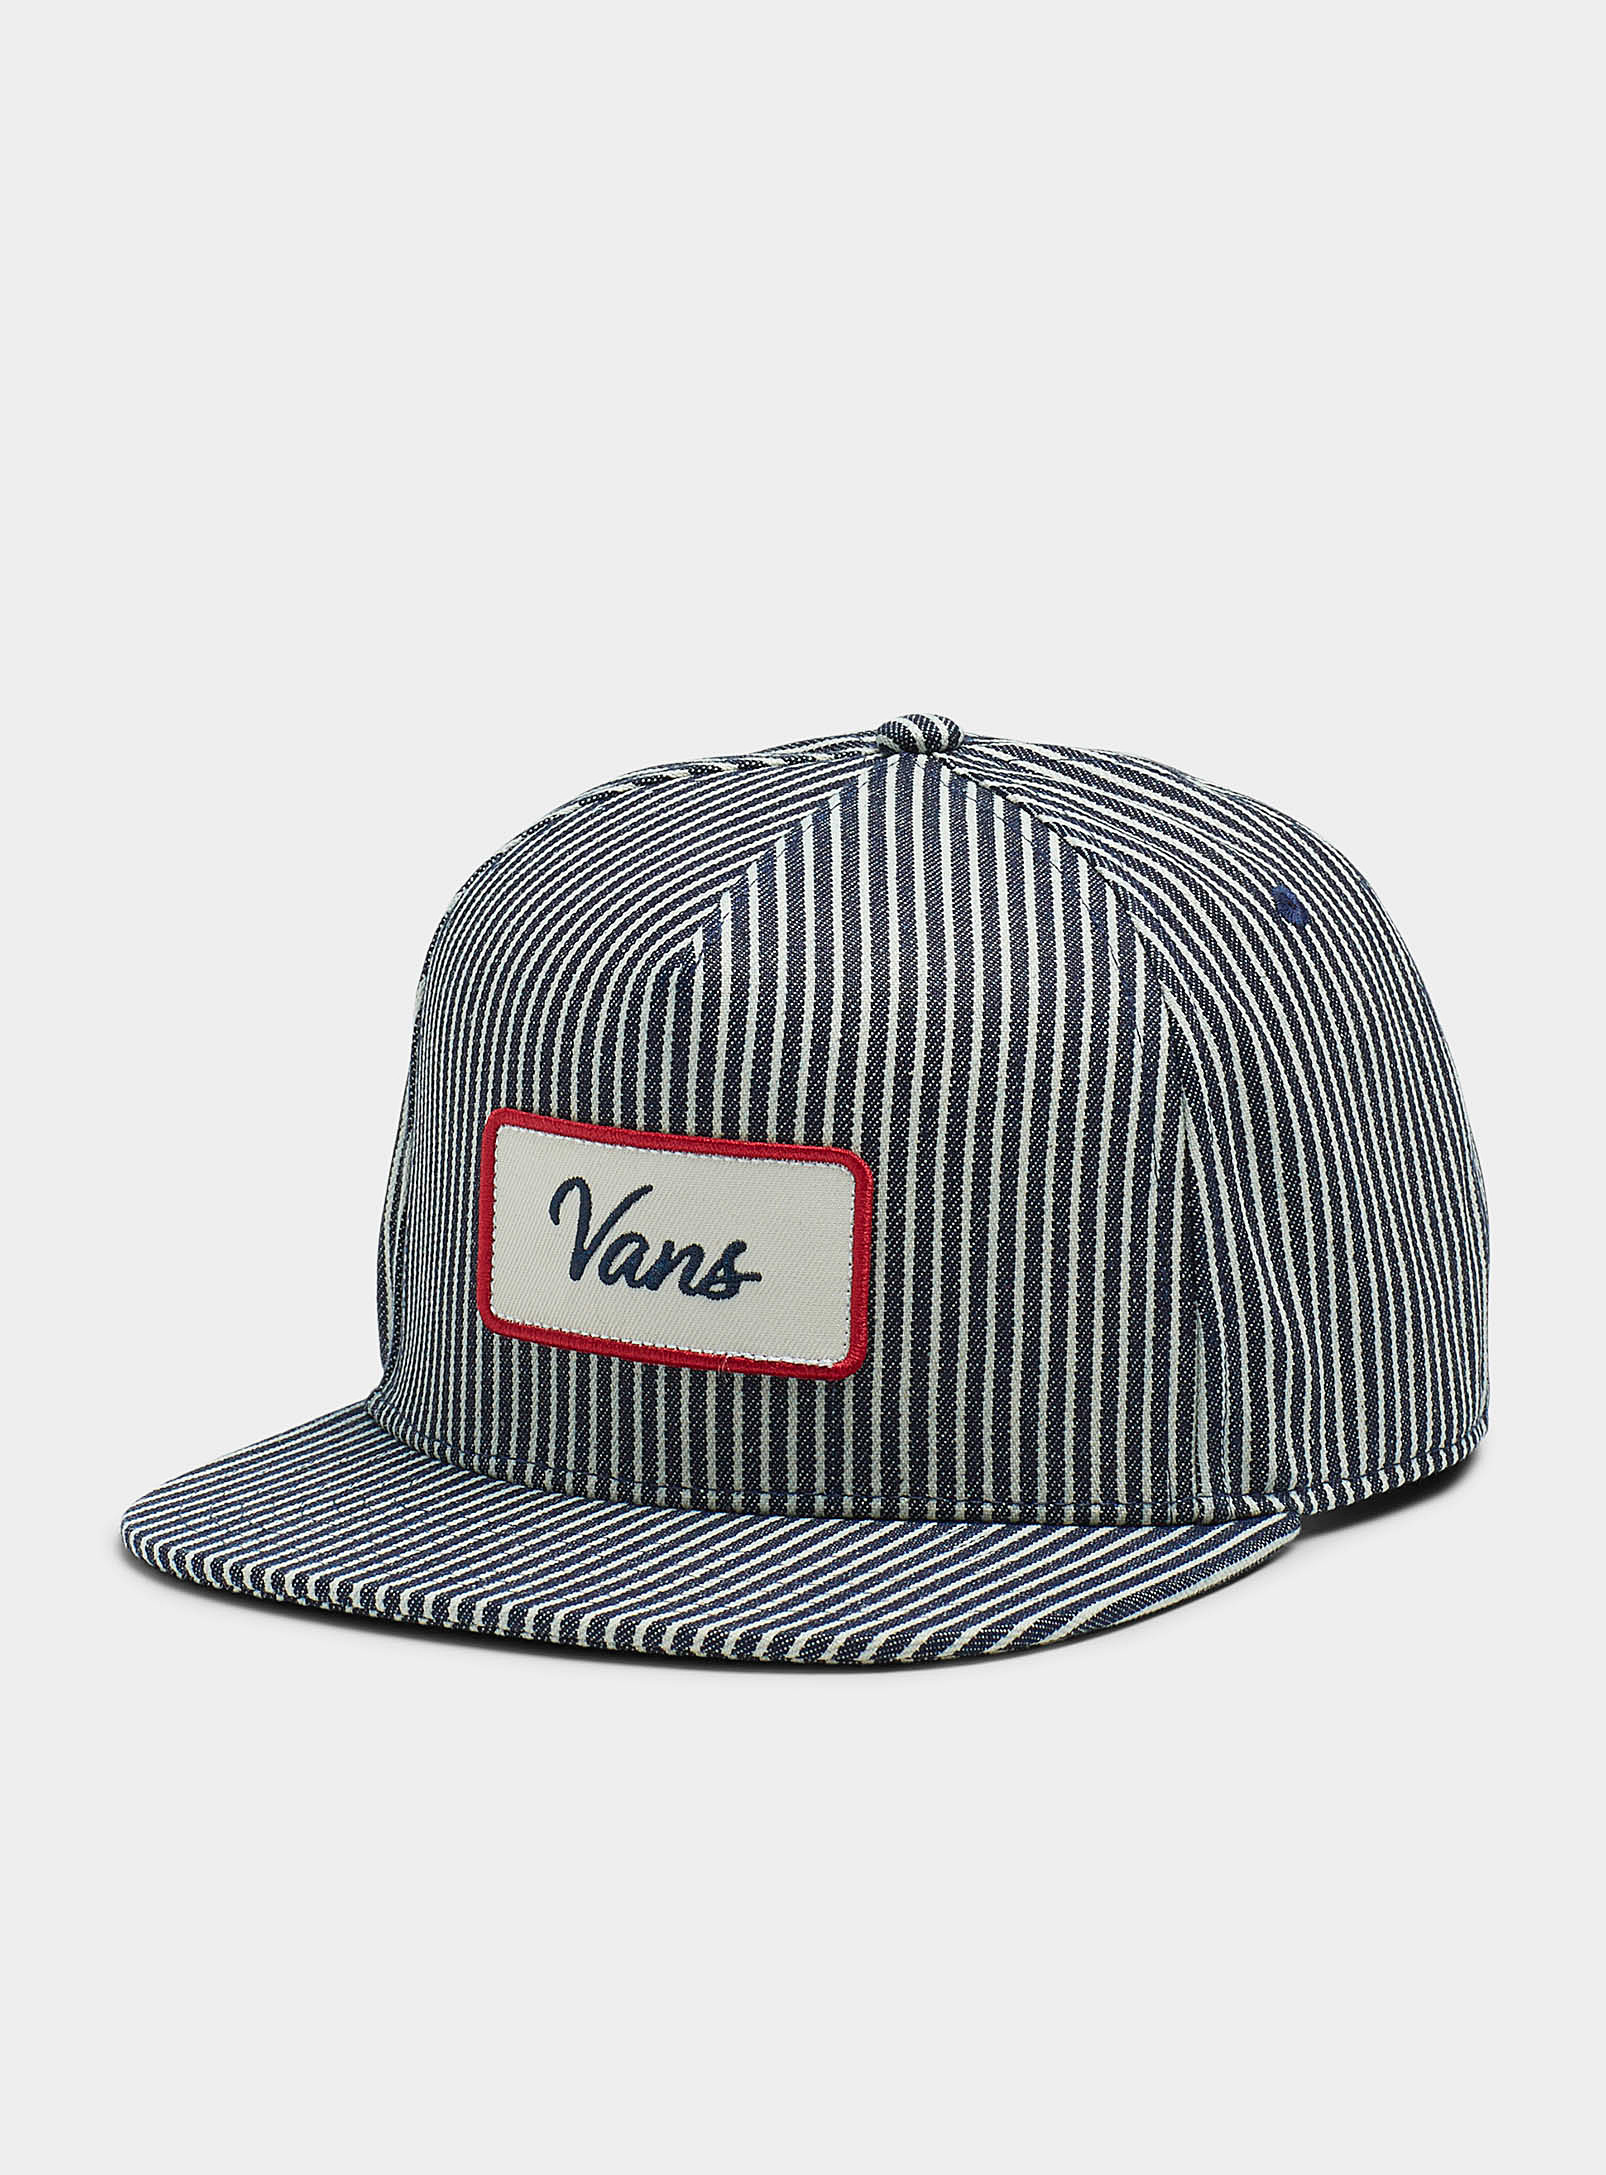 Vans - Men's Retro emblem striped cap